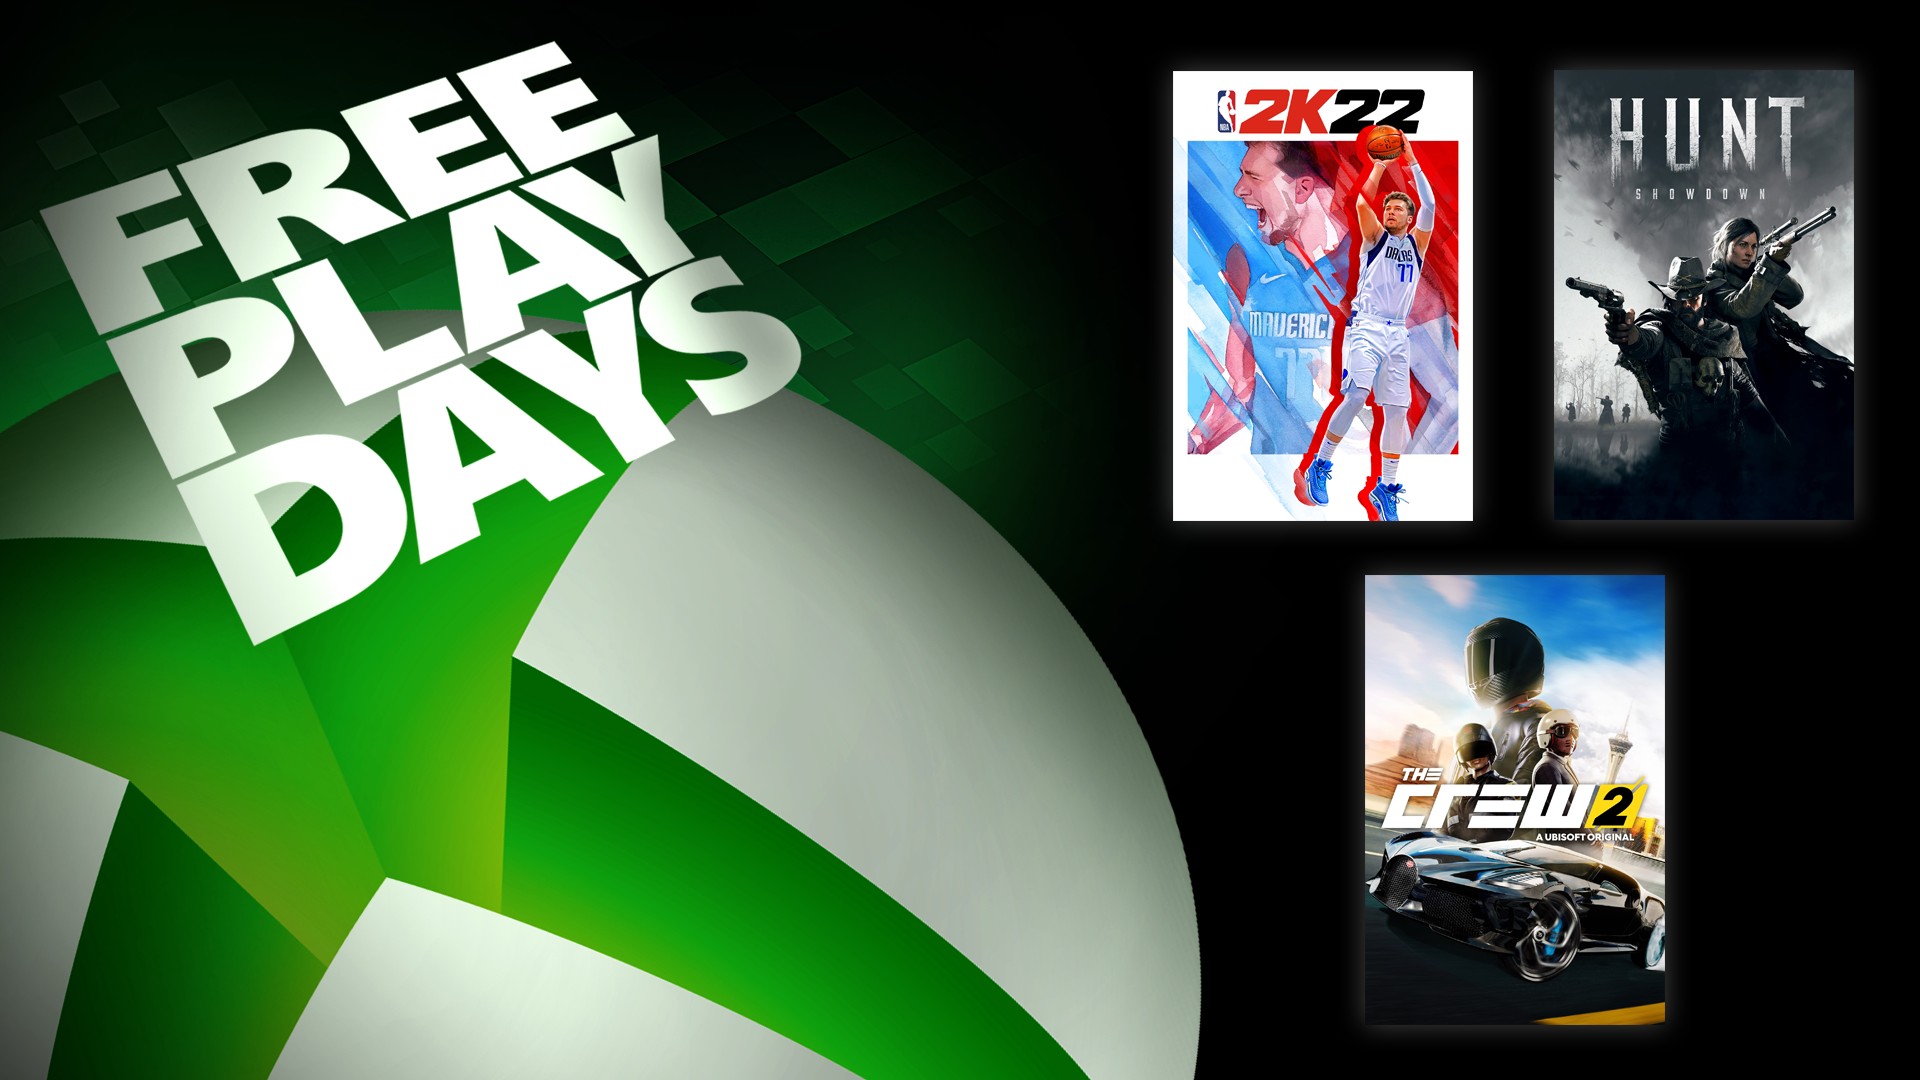 Jours de jeu gratuit : NBA 2K22, The Crew 2 & Hunt: Showdown